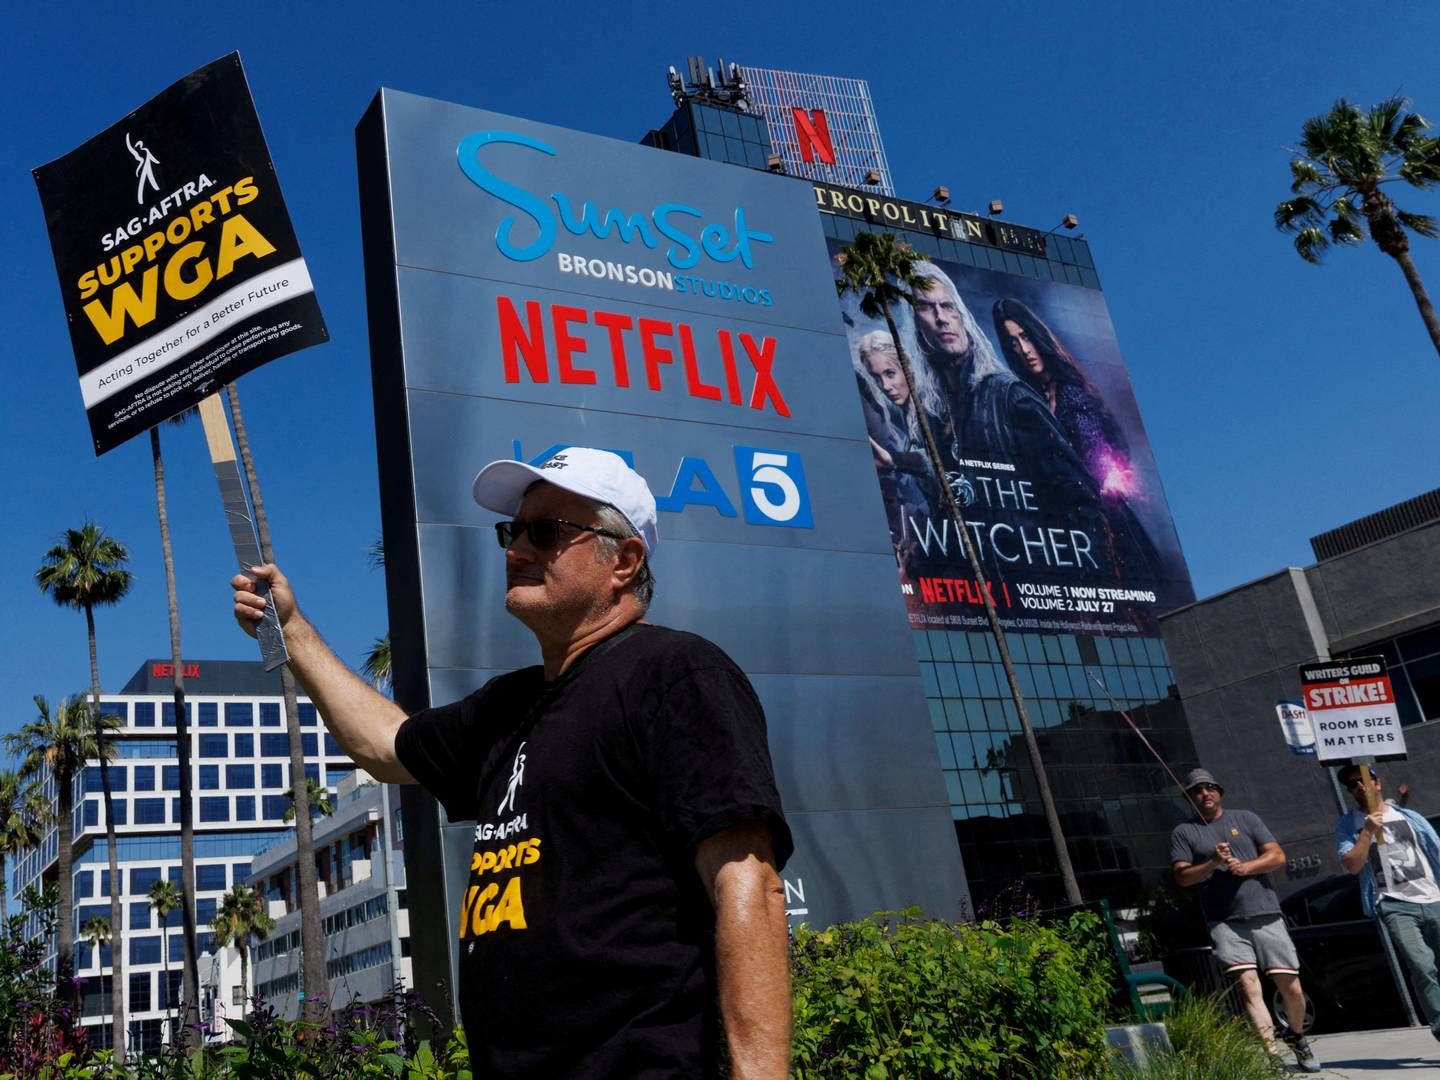 Netflix anklages sammen med Amazon og Walt Disney Co. af manuskriptforfatterne for monopolistisk adfærd. | Foto: Mike Blake